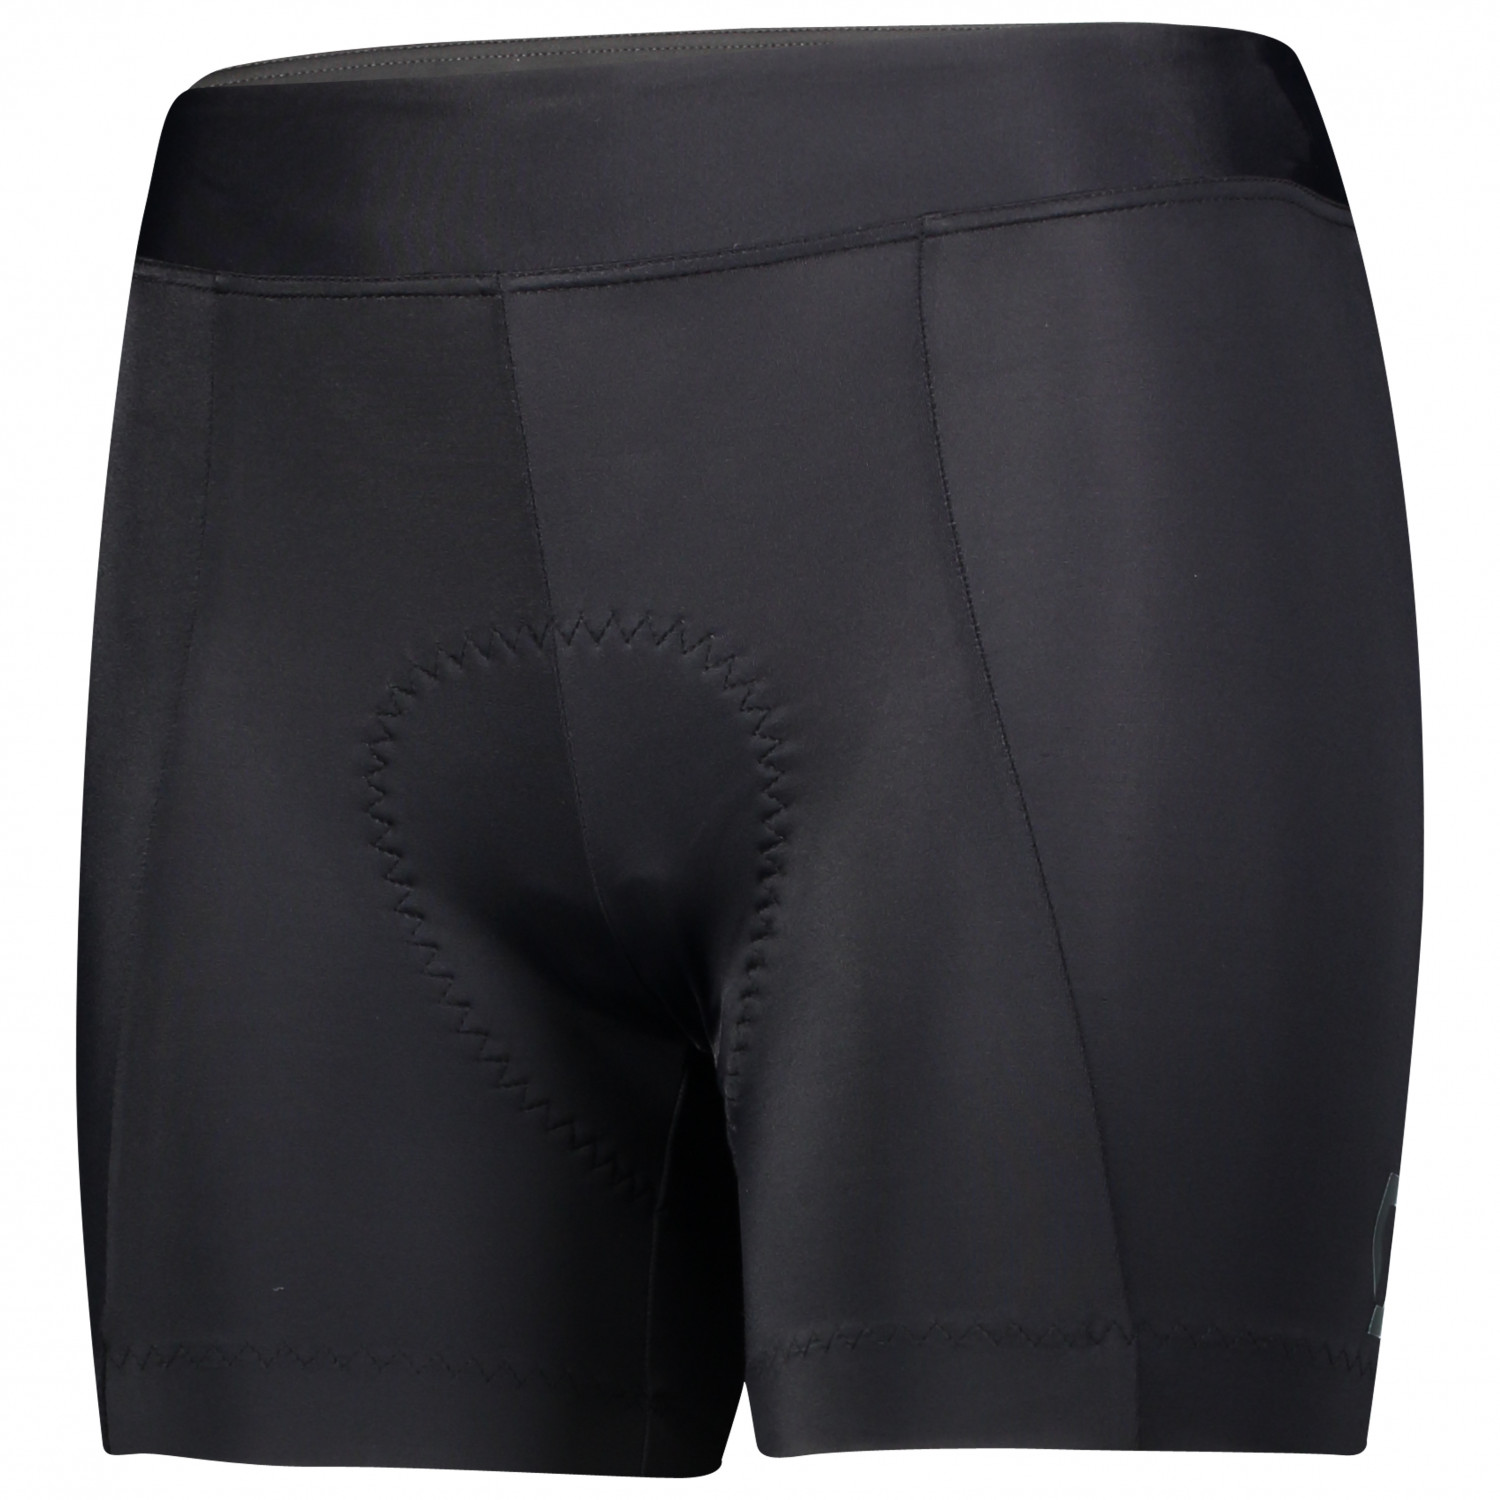 Велосипедные шорты Scott Women's Shorts Endurance 20 ++, цвет Black/Dark Grey